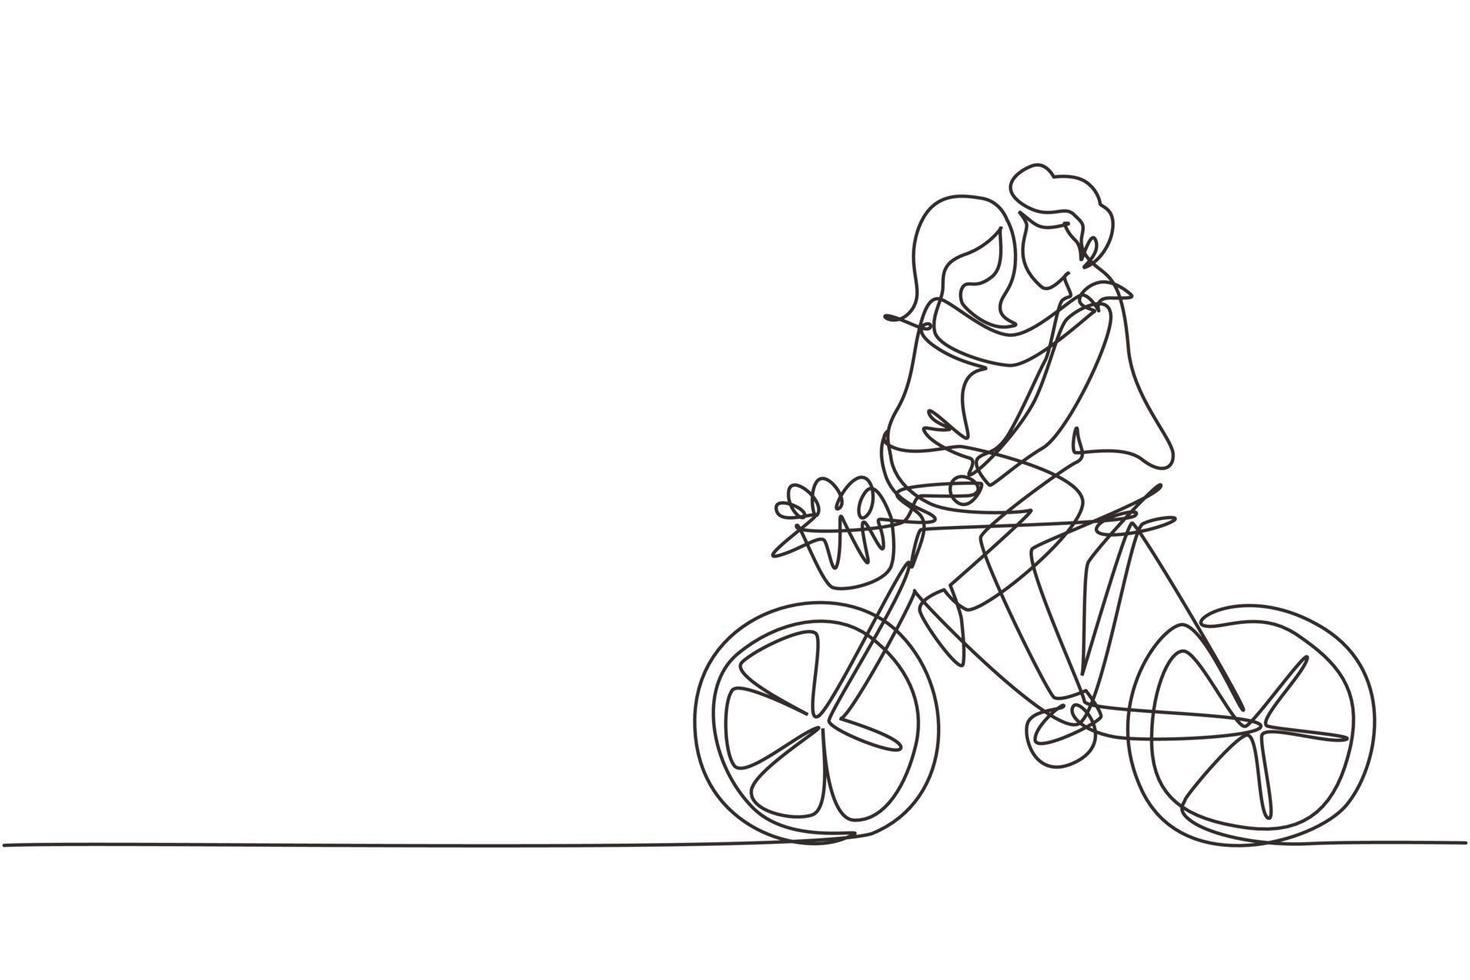 kontinuierliche eine Linie, die glückliche junge Männer und Frauen, die Fahrrad fahren, von Angesicht zu Angesicht zeichnet. glückliches romantisches Paar fährt zusammen Fahrrad. glückliche Familie. einzeiliges zeichnen design vektorgrafik illustration vektor